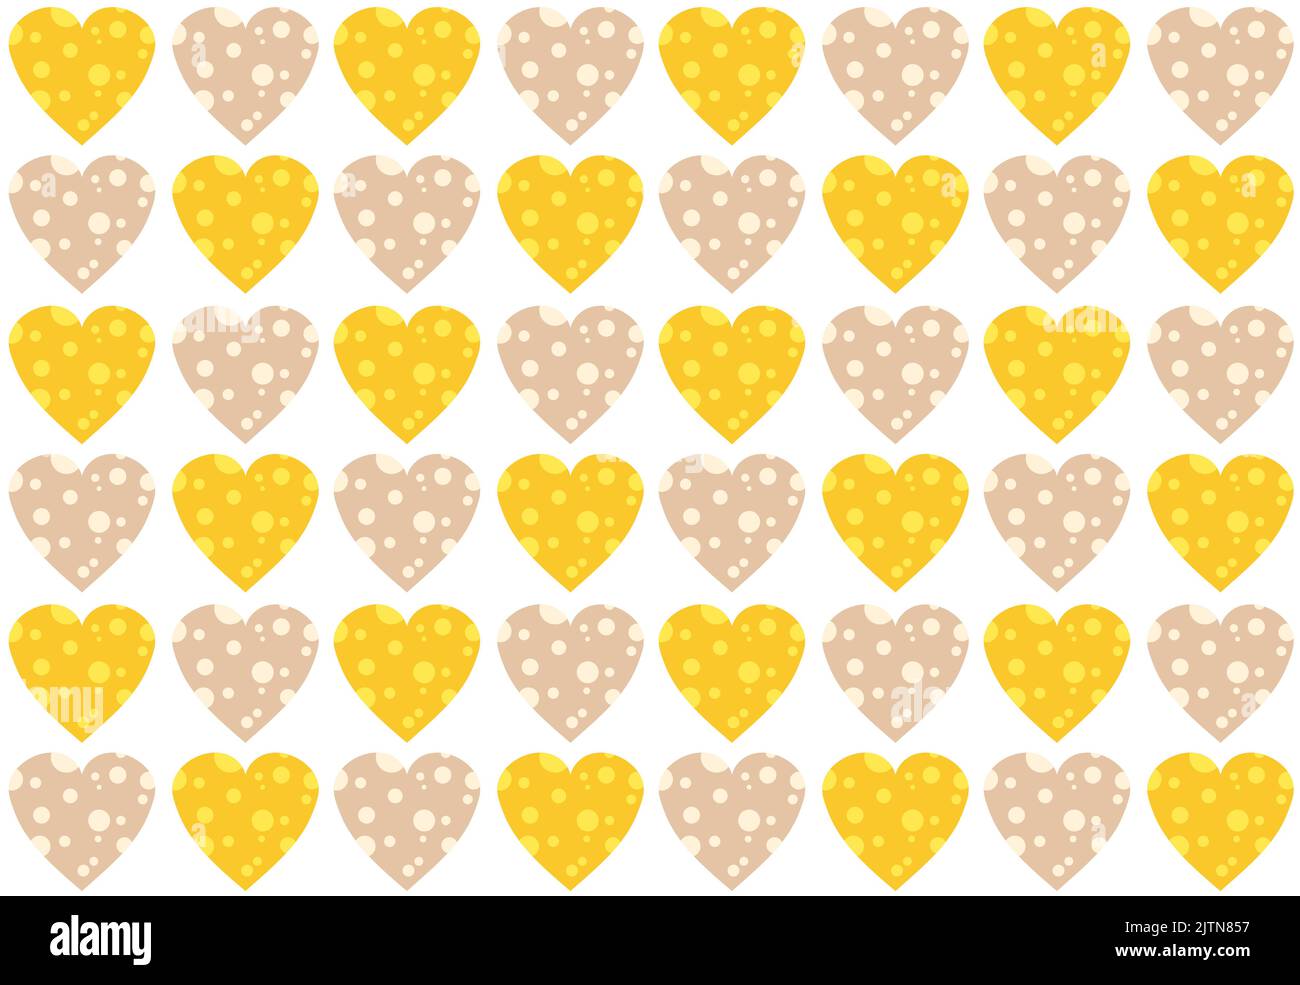 Niedliches Baby-Vektor-Muster mit gelben und beigen Herzen. Käse in Herzform. Gemütlicher Hintergrund mit Herzen. Abstrakter Nahtdruck für die Geschenkverpackung. Lustige Kindermuster für Kleidung, Leinen. Stock Vektor